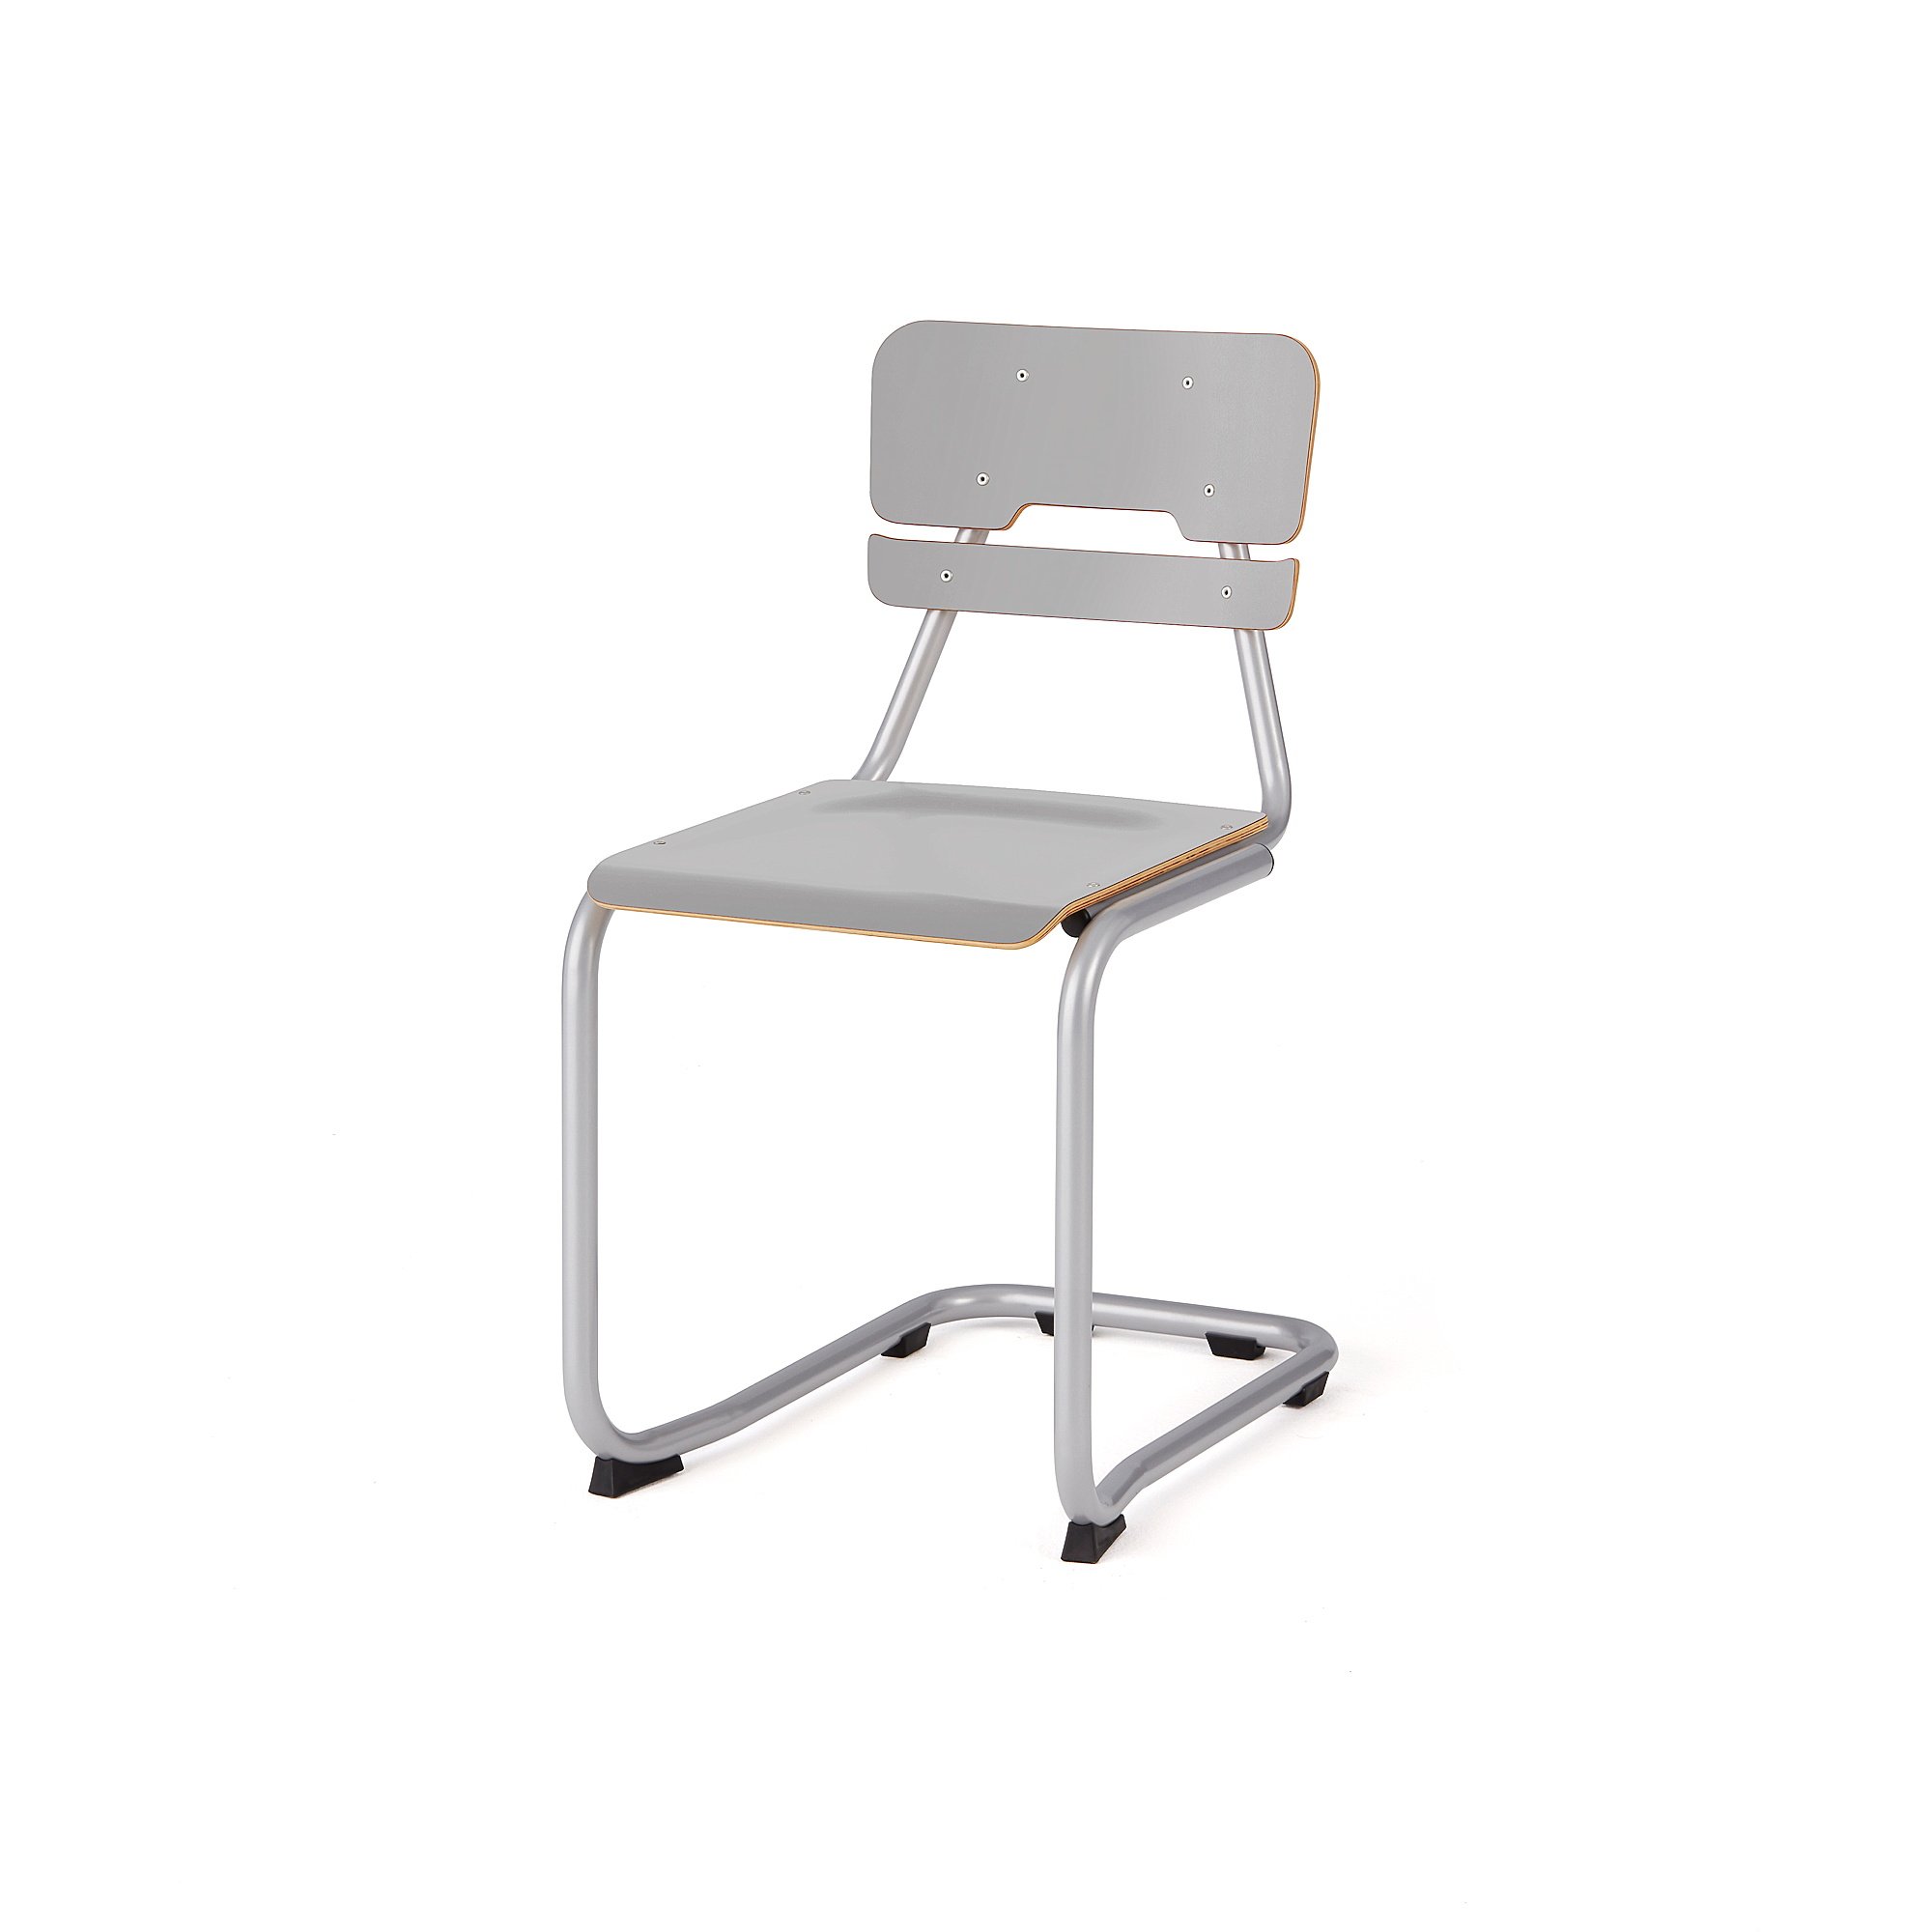 Školní židle LEGERE I, výška 450 mm, stříbrná, šedá